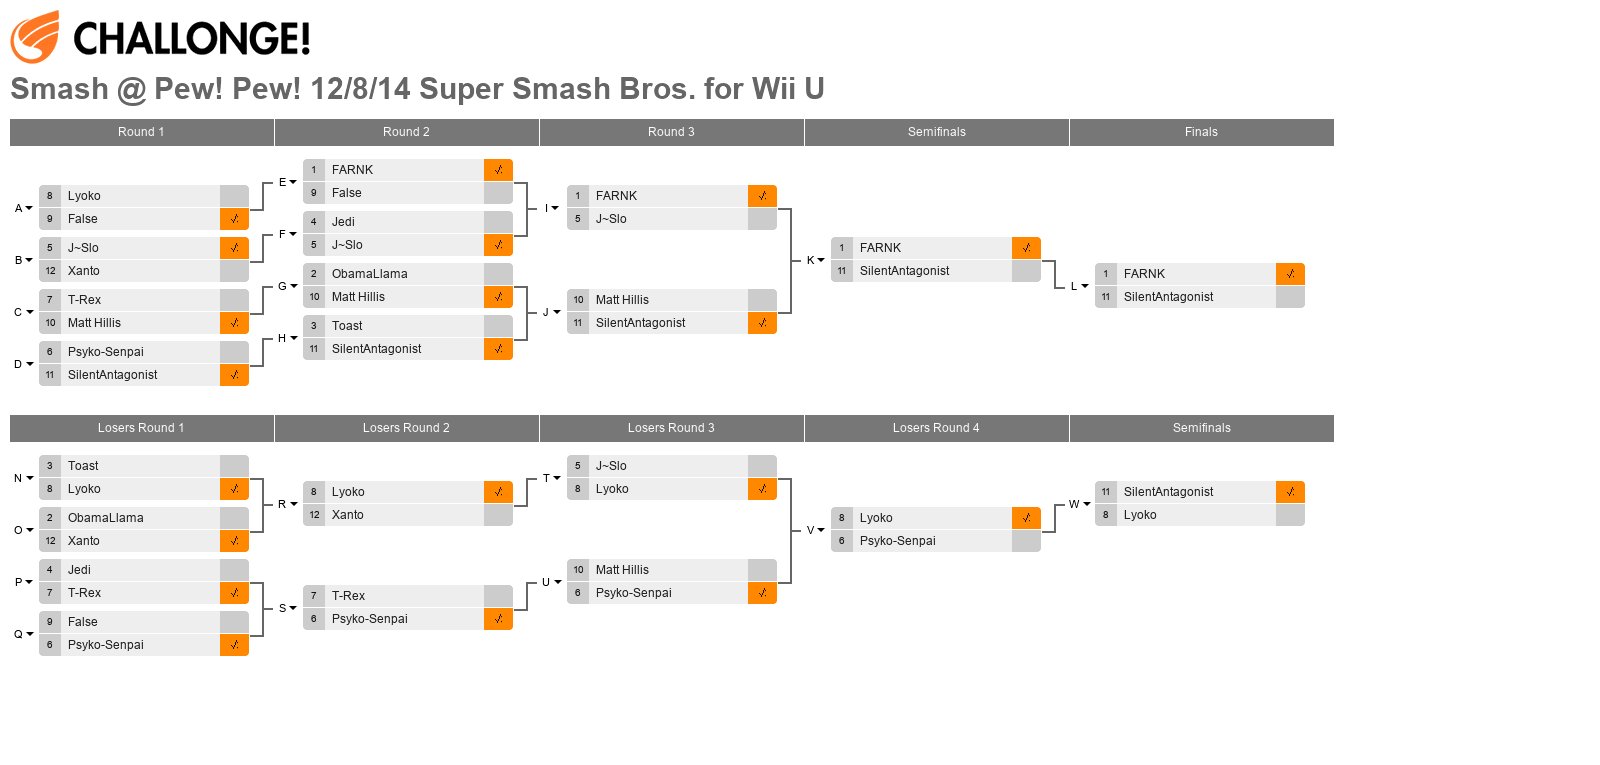 Smash @ Pew! Pew! 12/8/14 Super Smash Bros. for Wii U